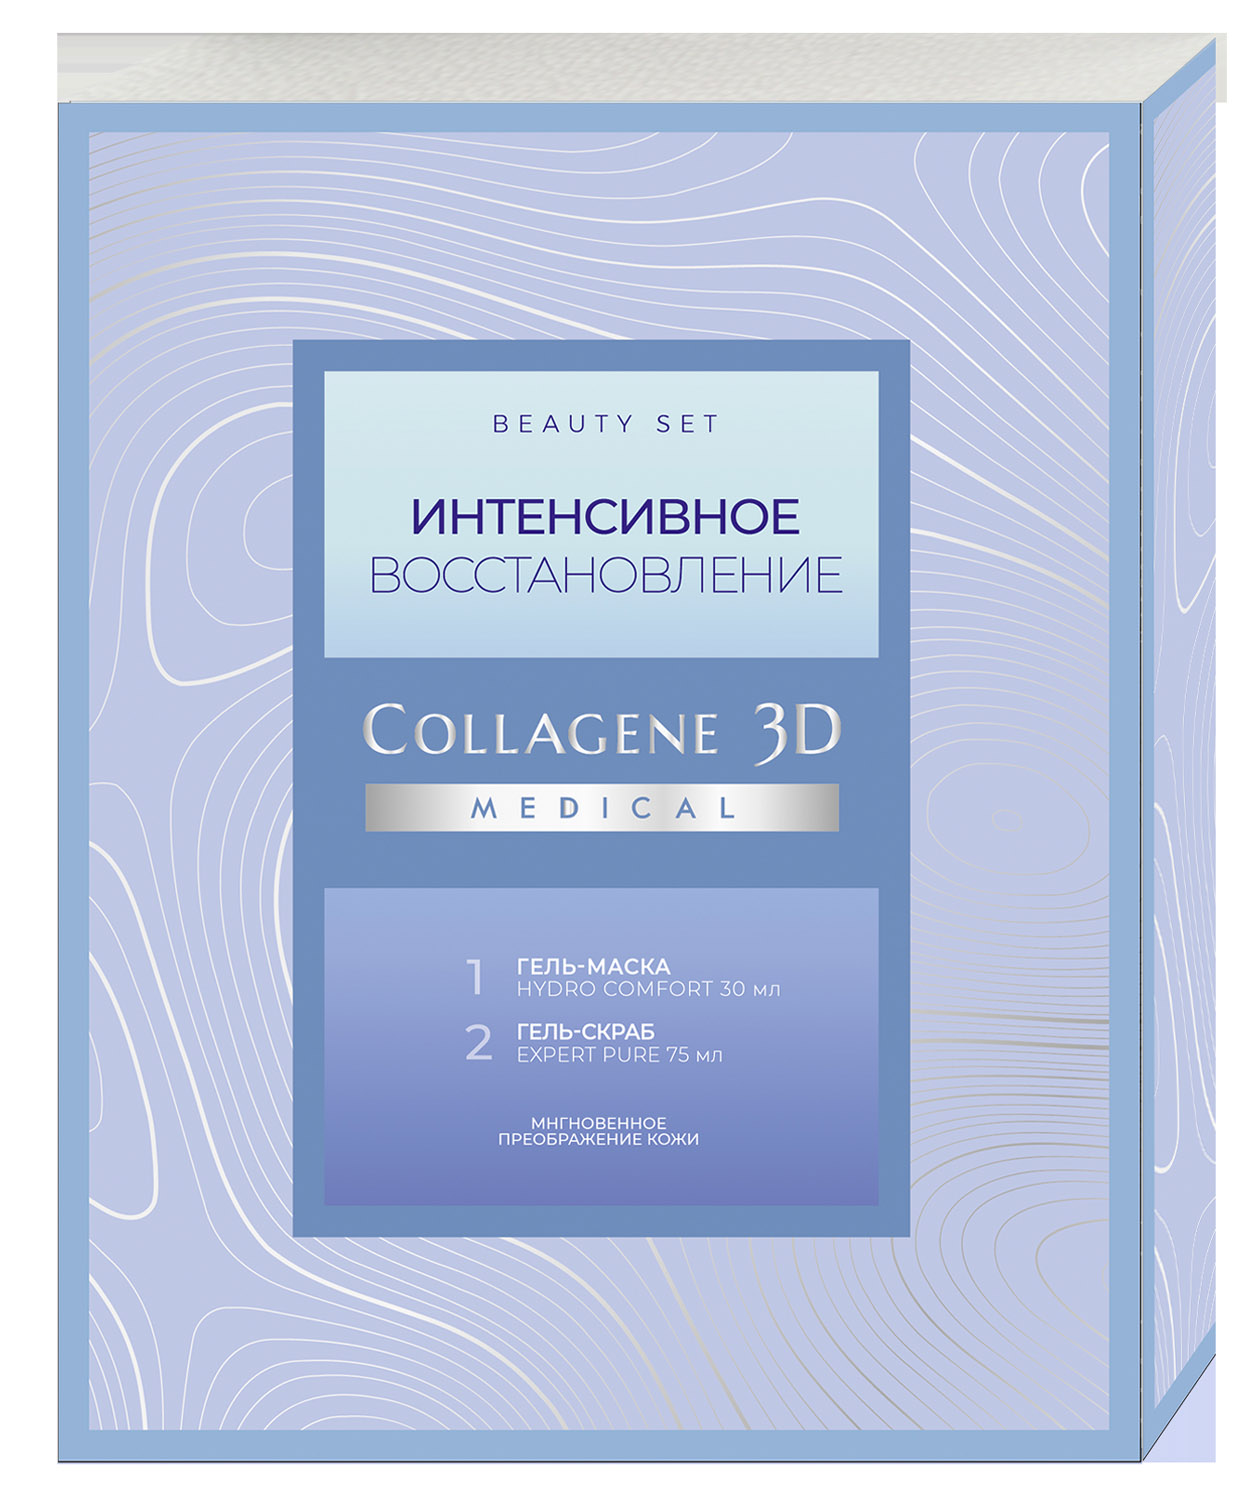 Купить Collagene 3D Подарочный набор  Интенсивное восстановление : гель-маска 30 мл + гель-скраб 75 мл (Collagene 3D, Подарочные наборы), Россия